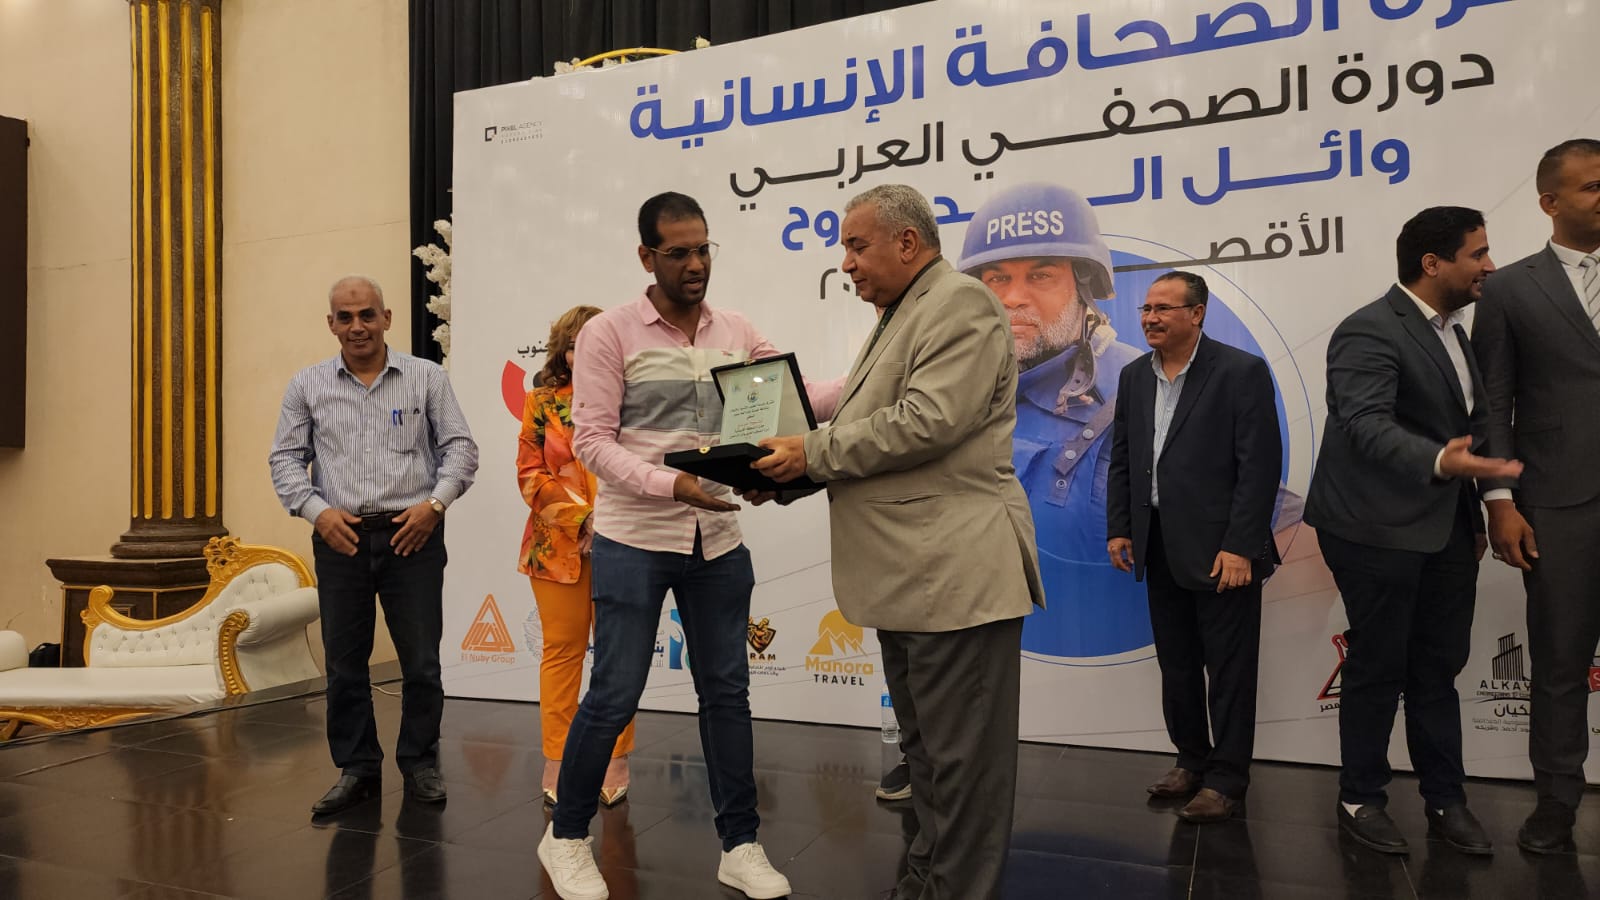 تسلم مراسل اليوم السابع التكريم في جائزة الصحافة الإنسانية بالصعيد